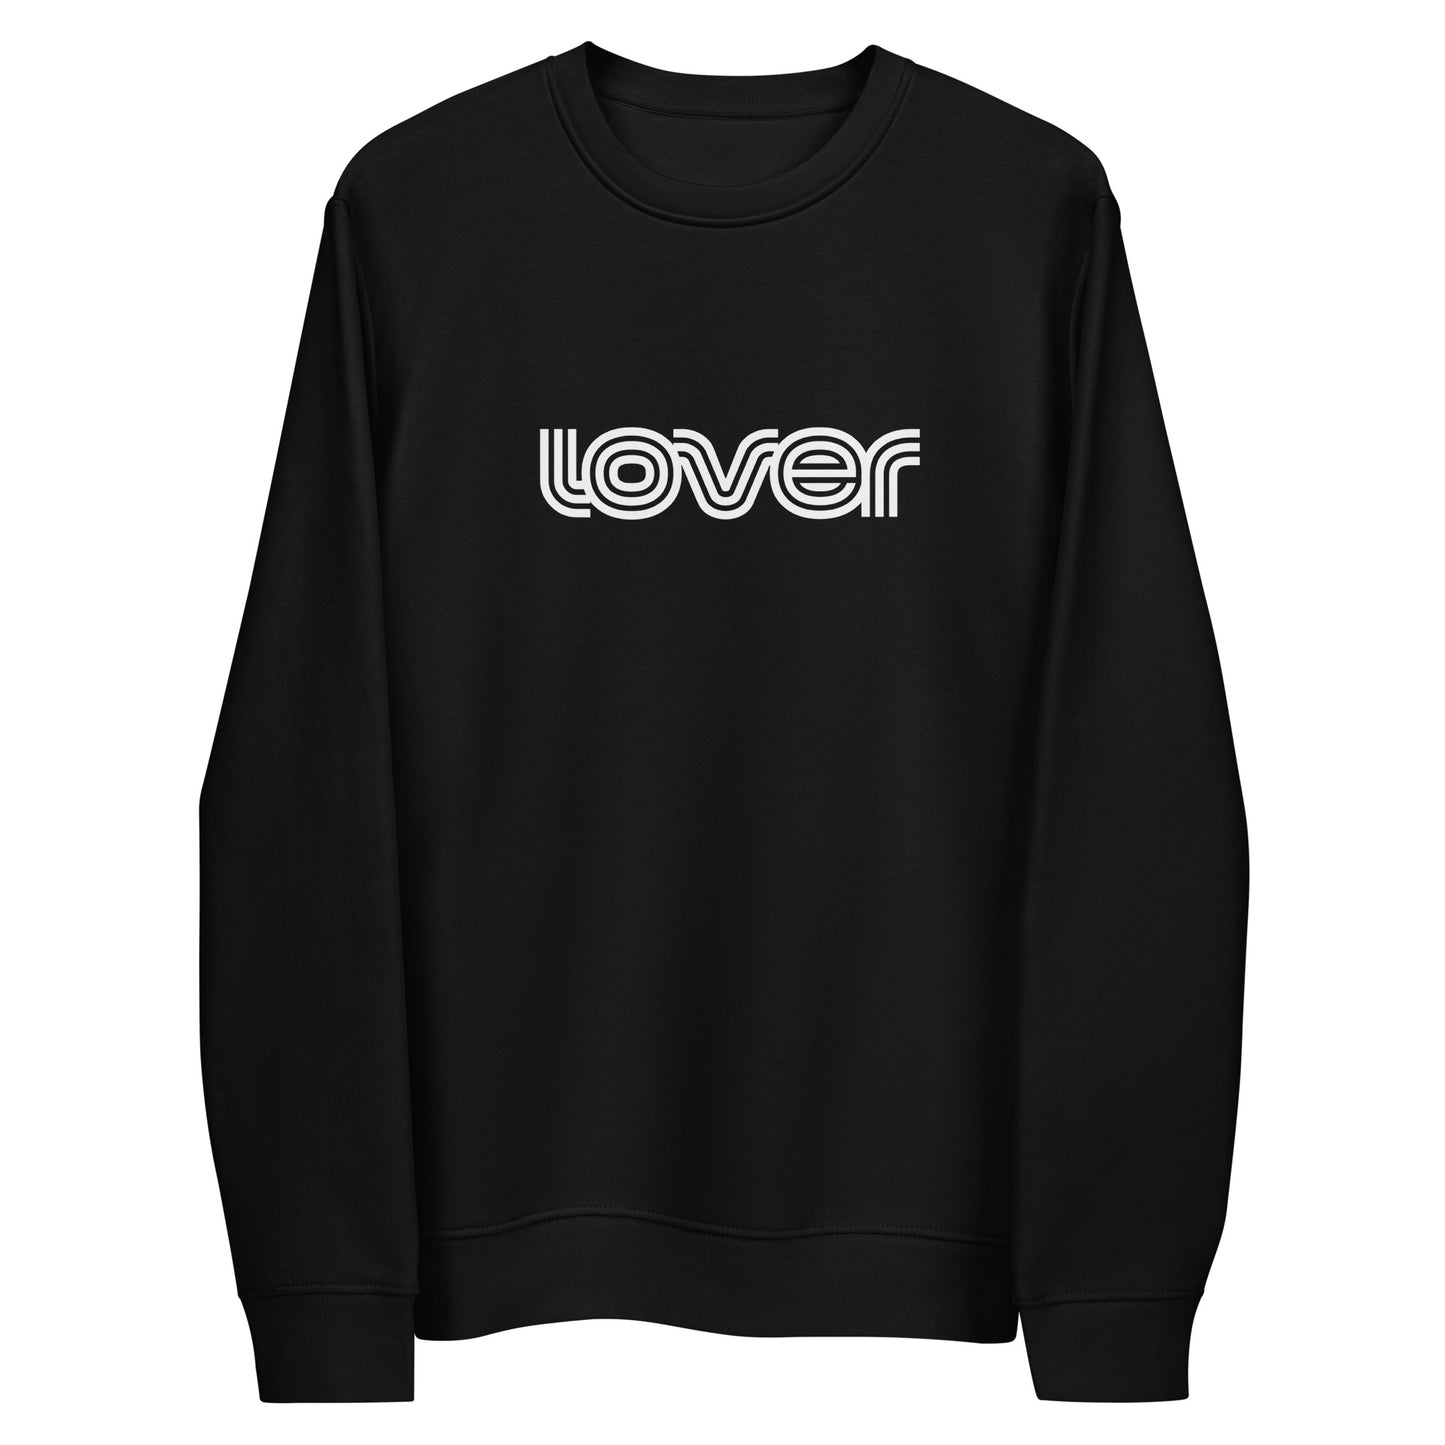 Lover Eco Fleece Sweatshirt